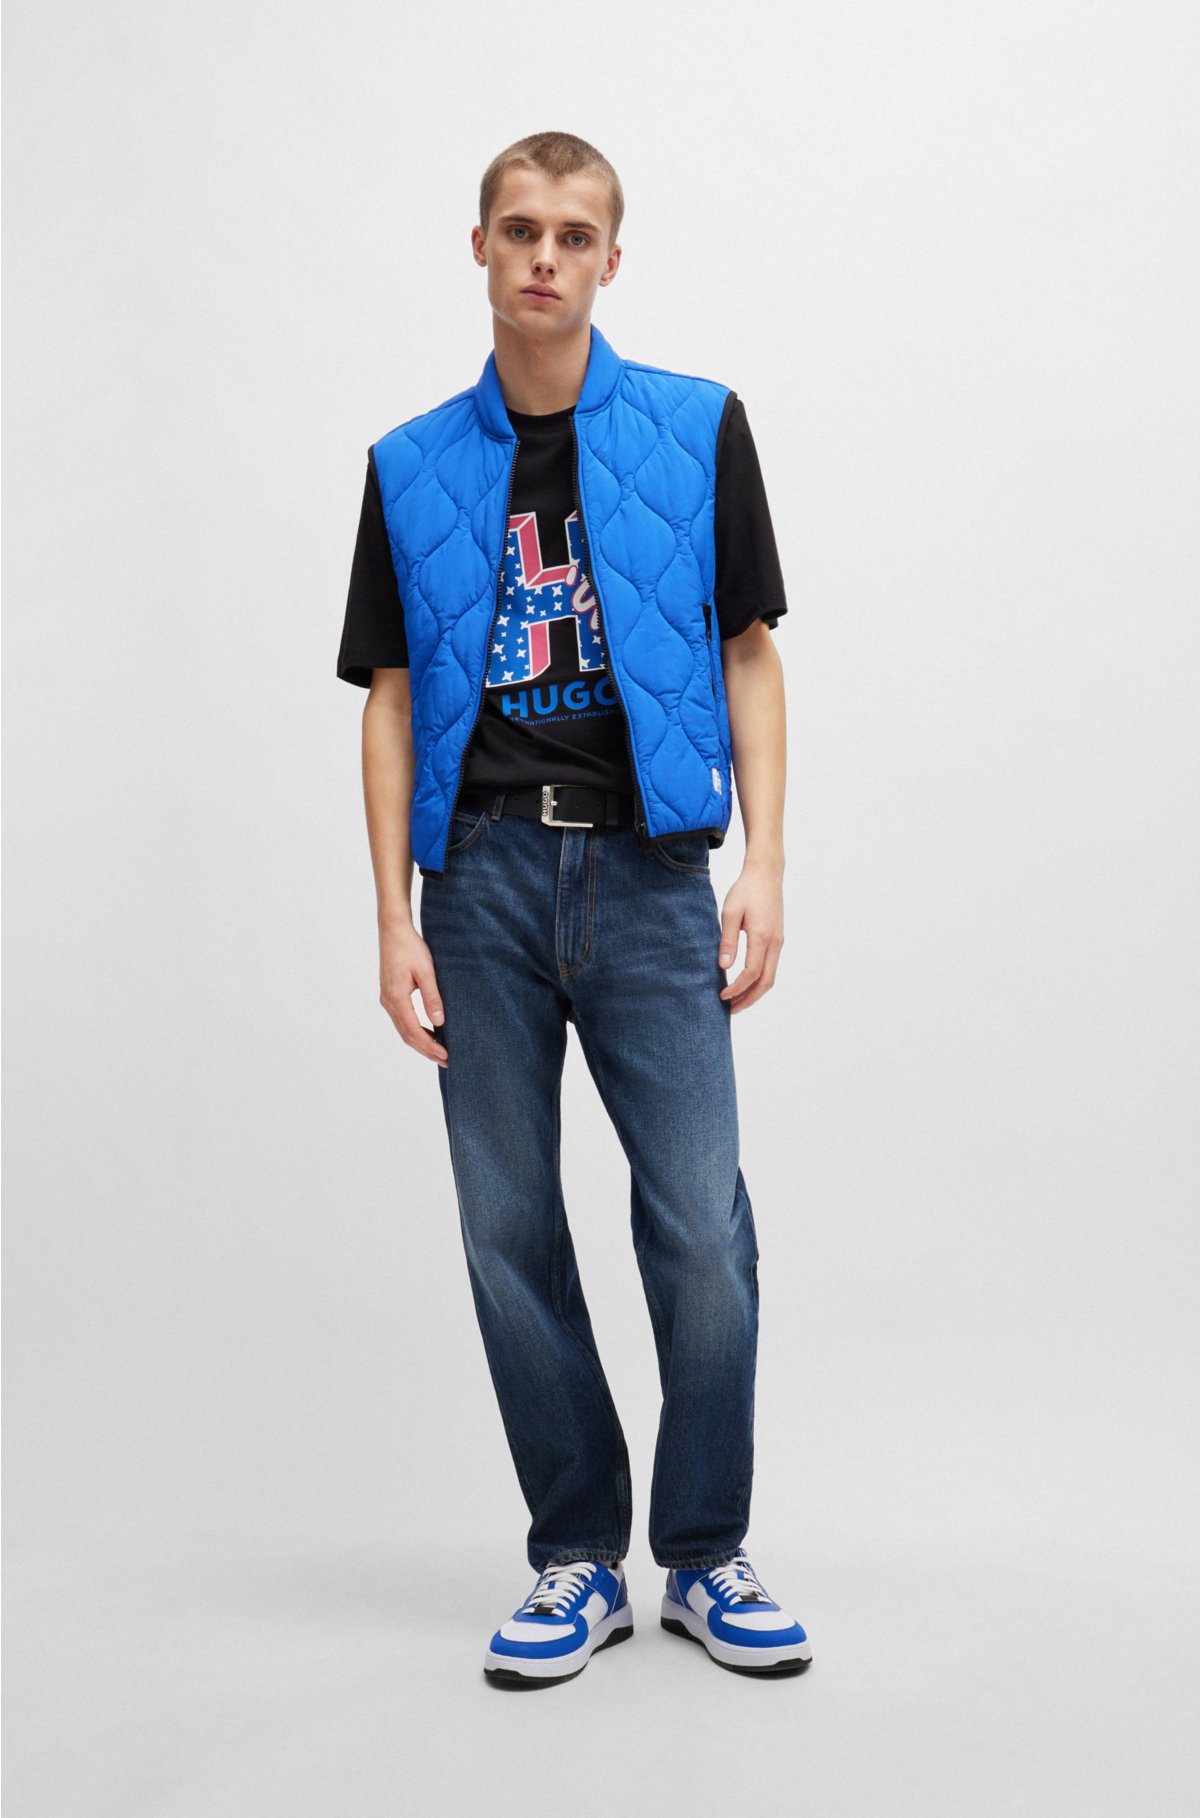 Regular-fit jeans in navy stonewashed denim, Dark Blue